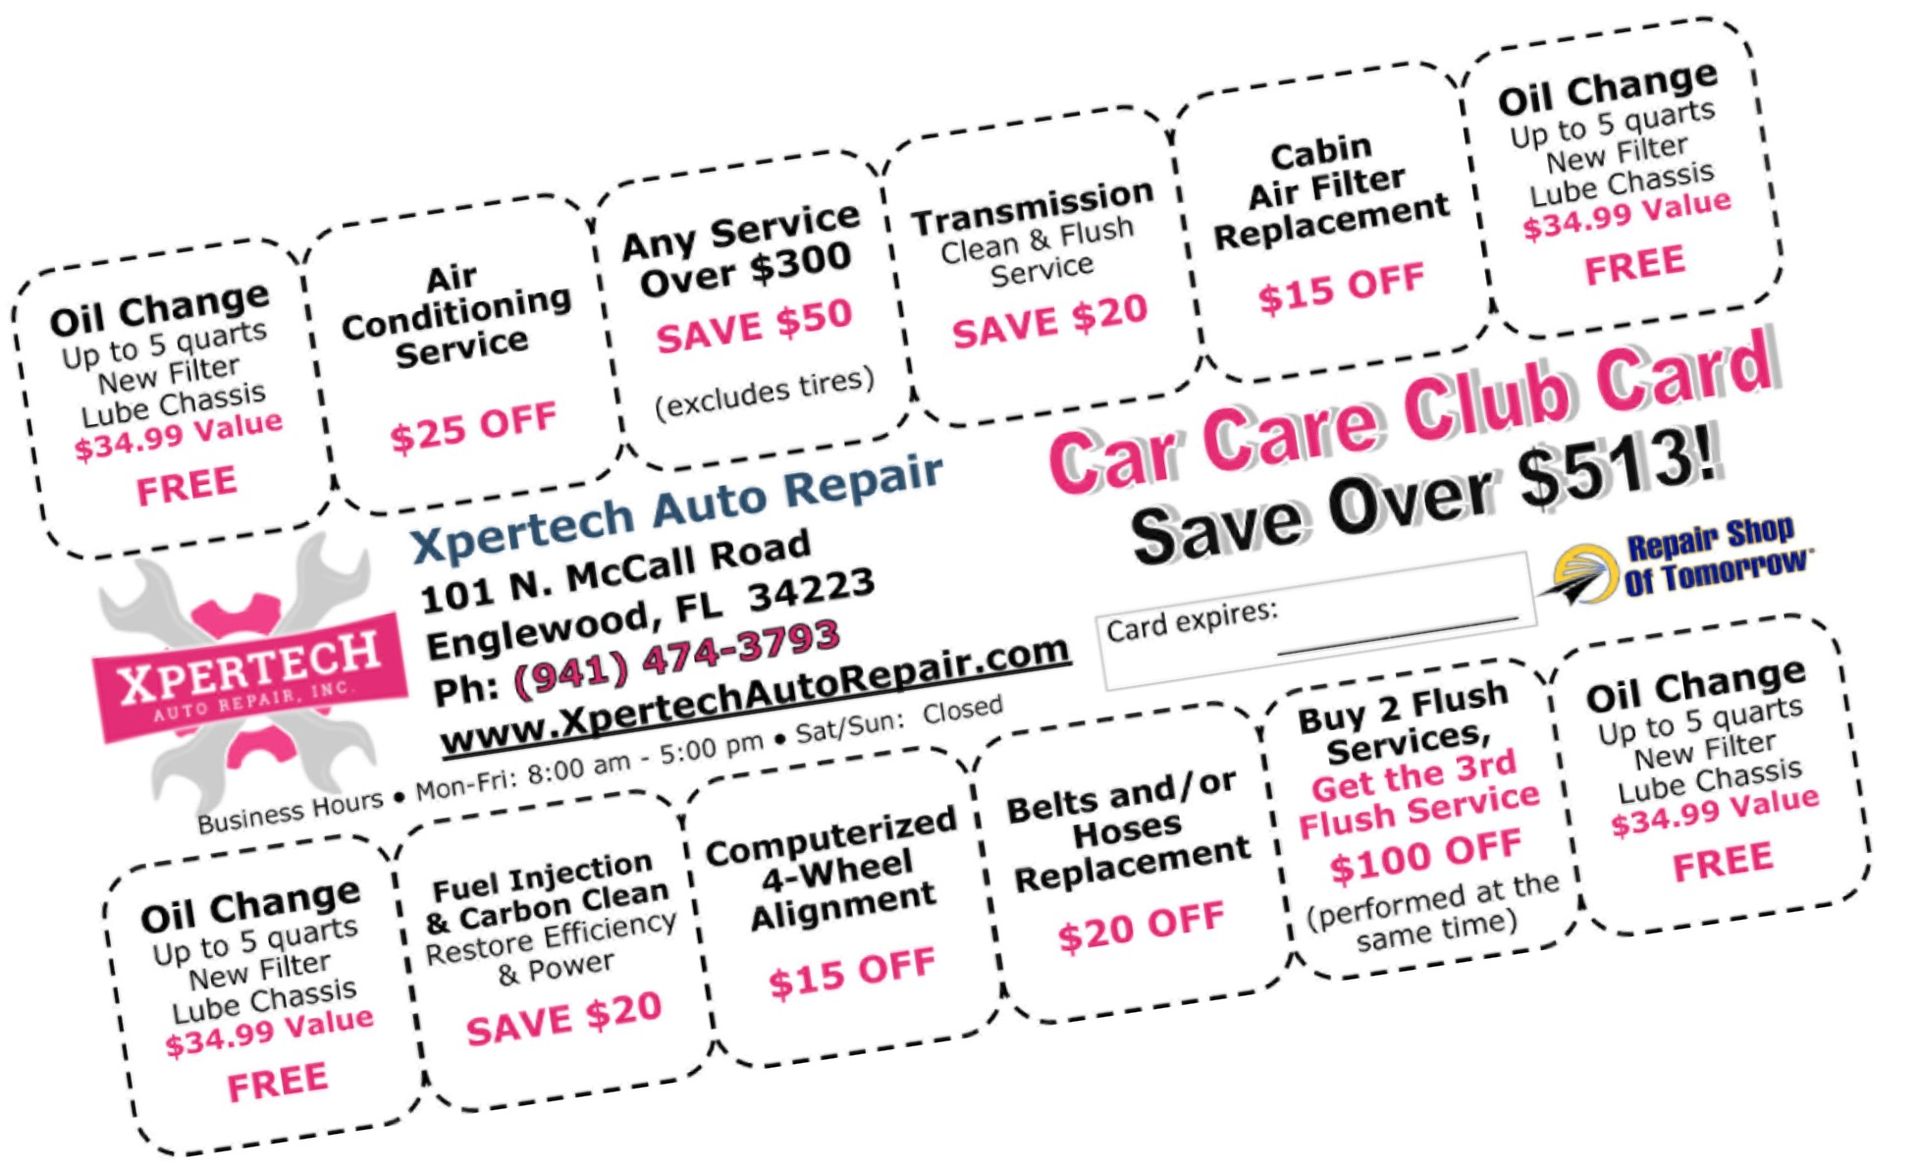 Car Care Club Card